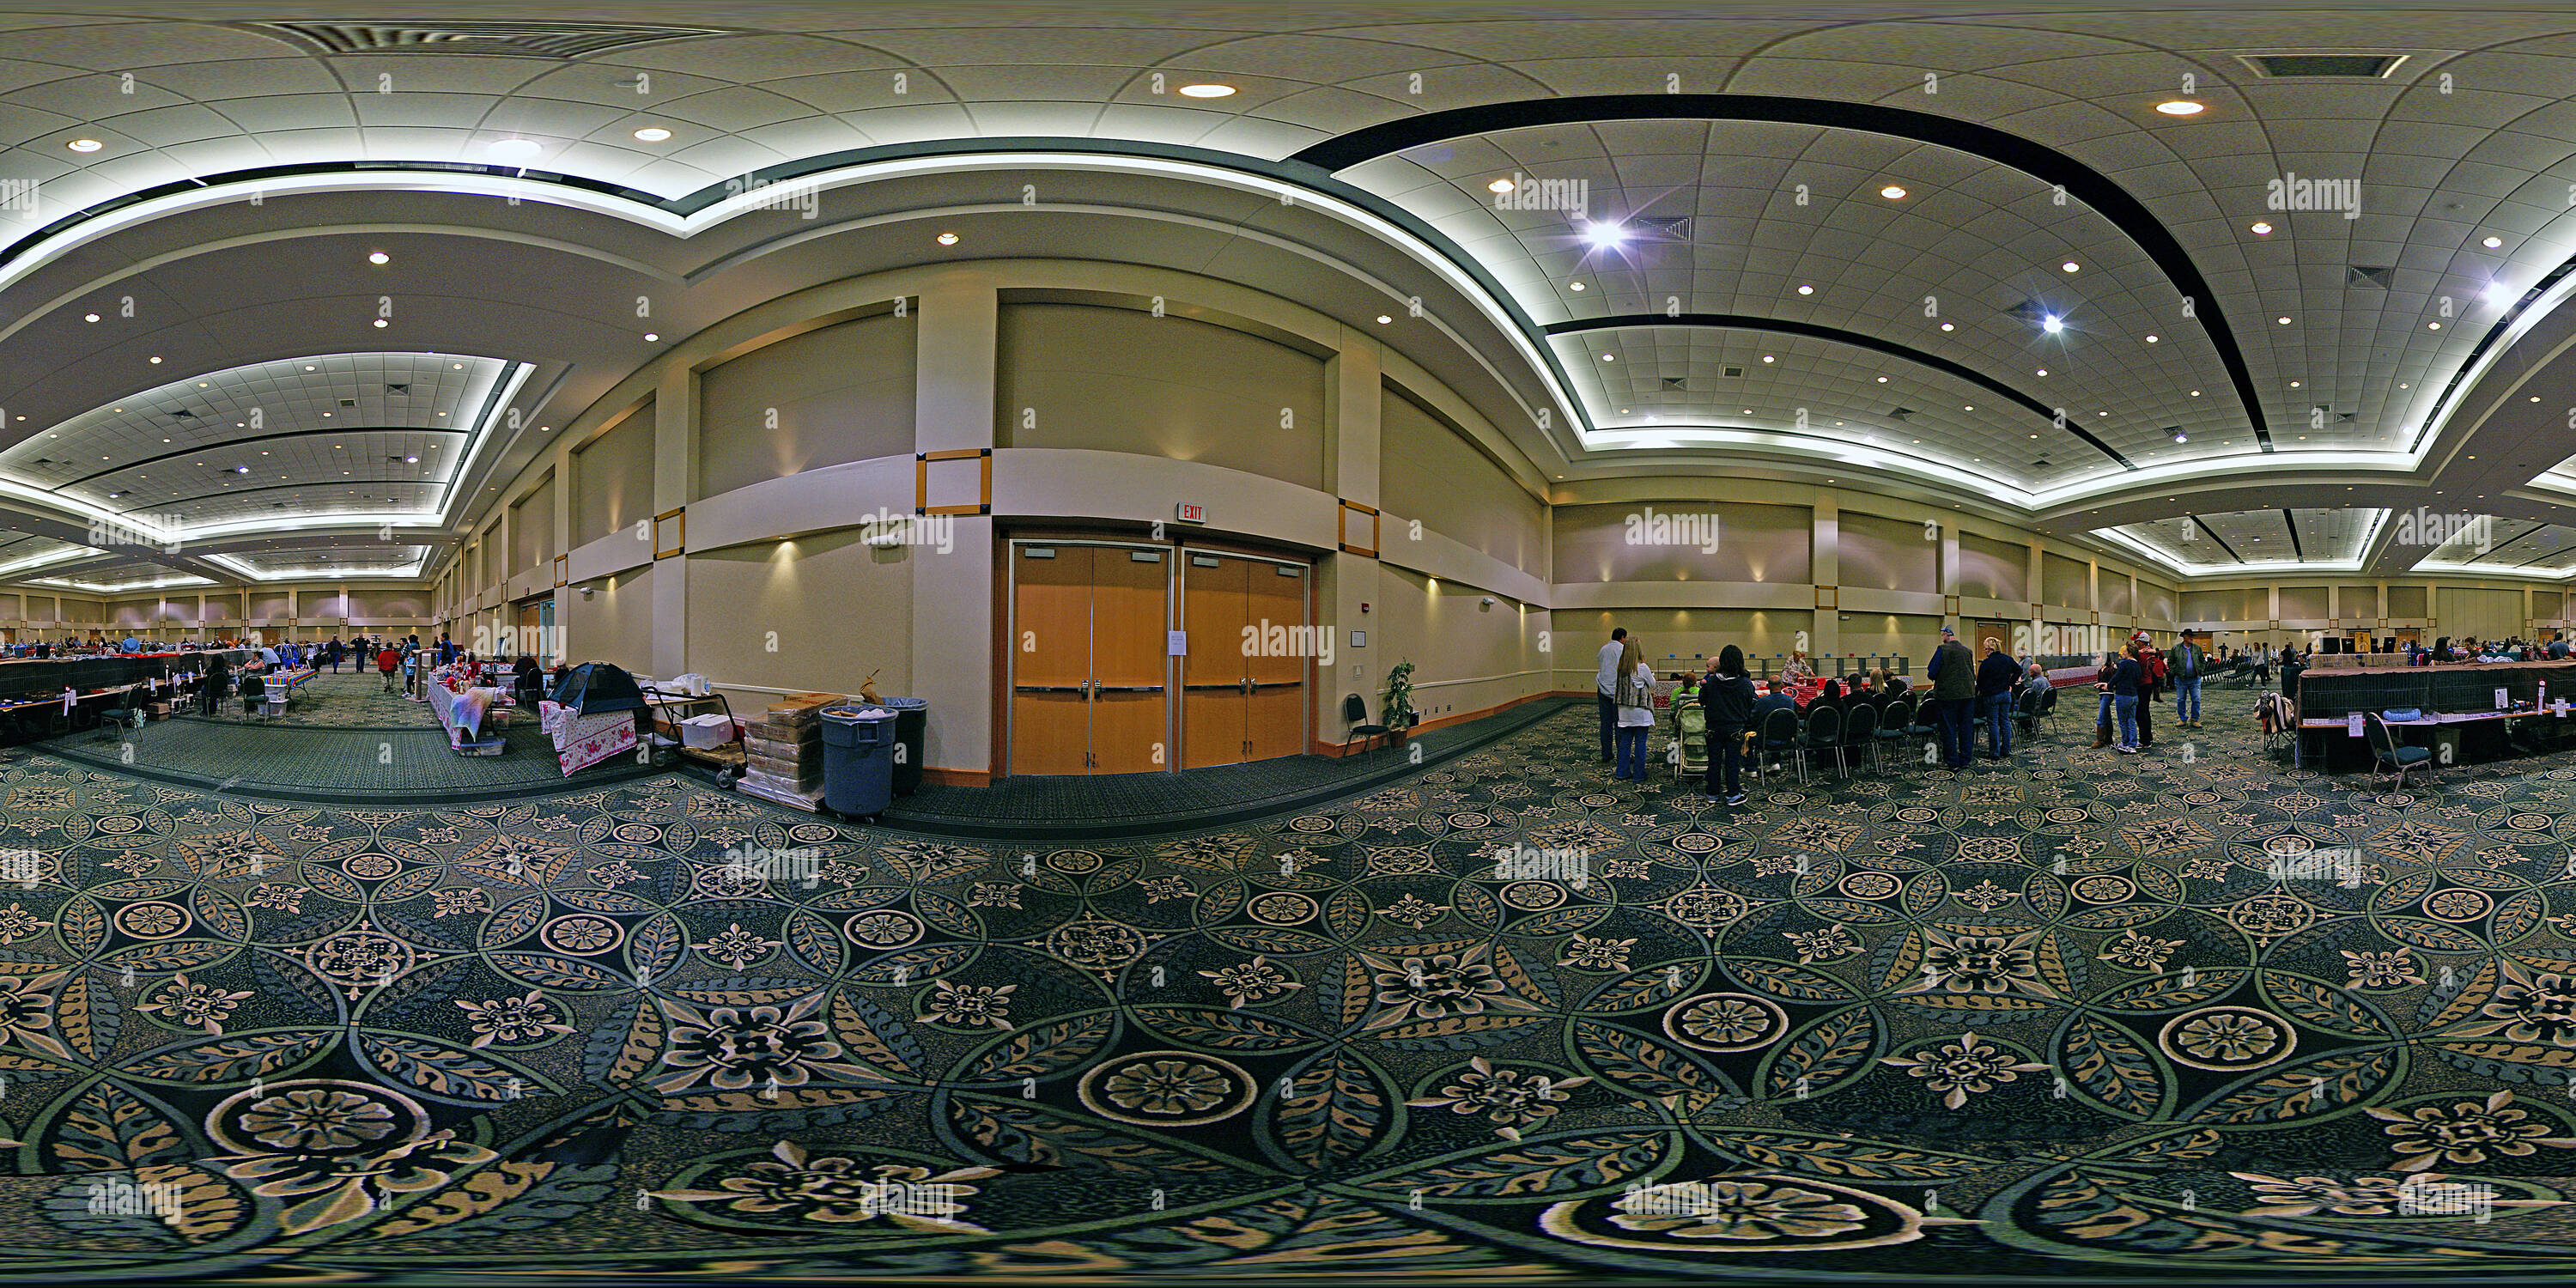 South Pacific Ballroom at Mandalay Bay Convention Center